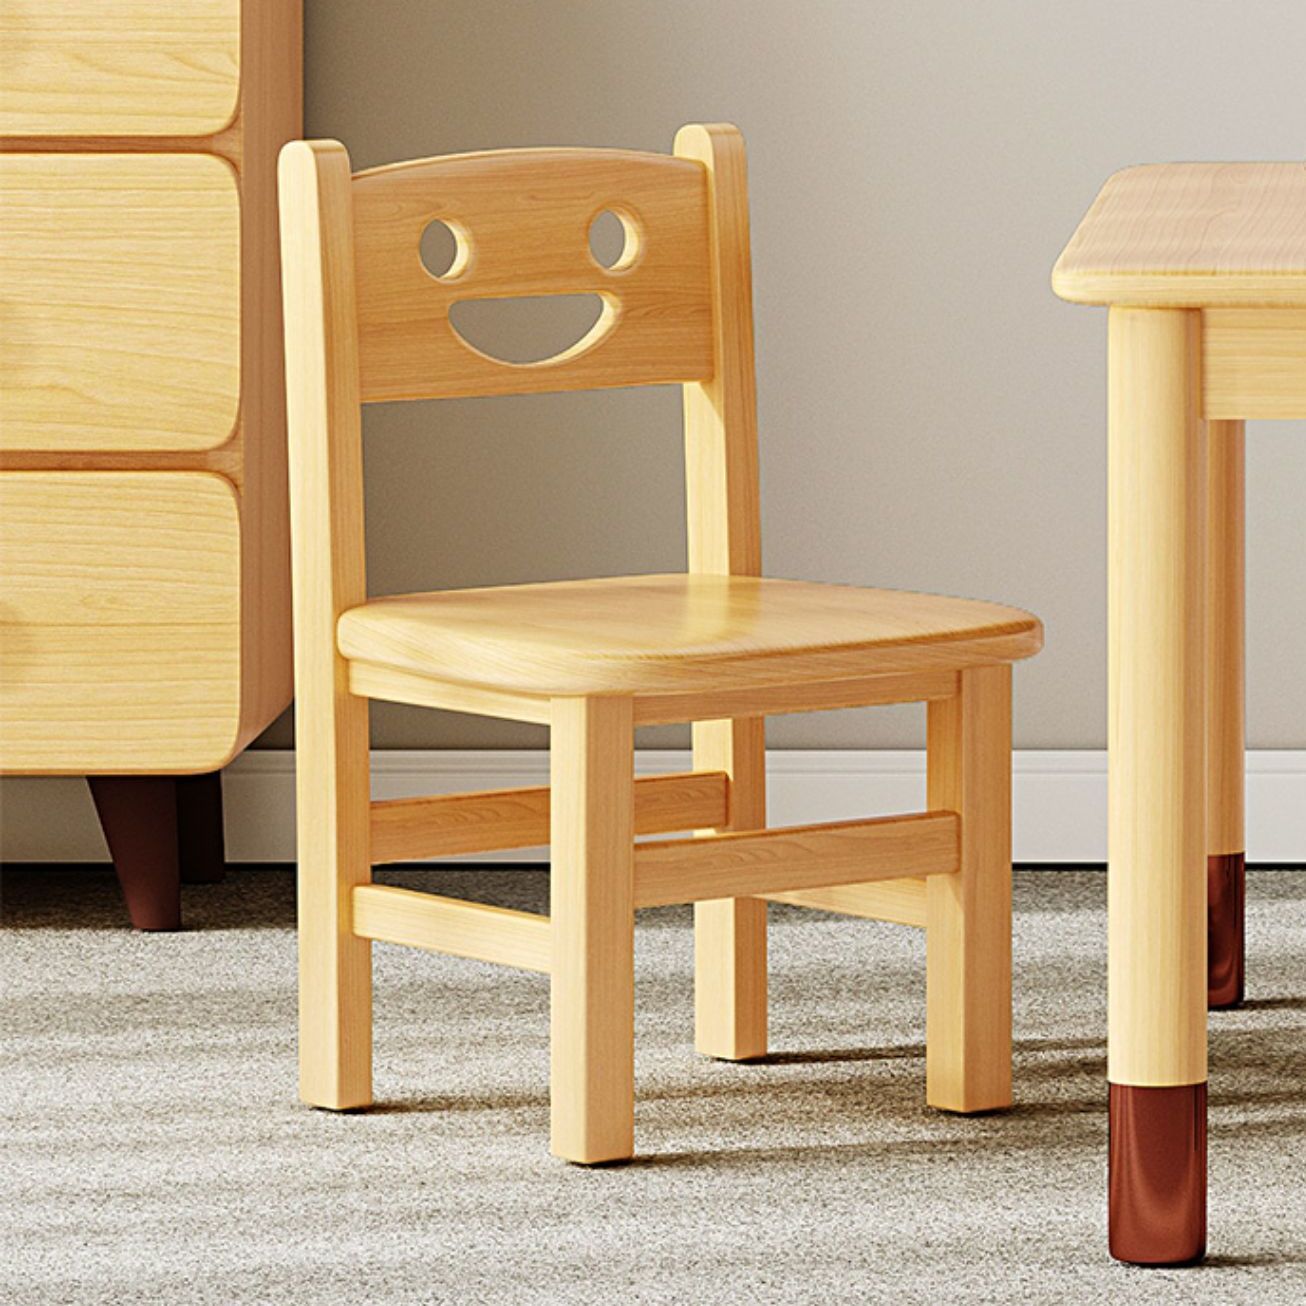 实木椅子家用小椅子矮椅子木质靠背椅子儿童矮凳客厅小凳子大凳面